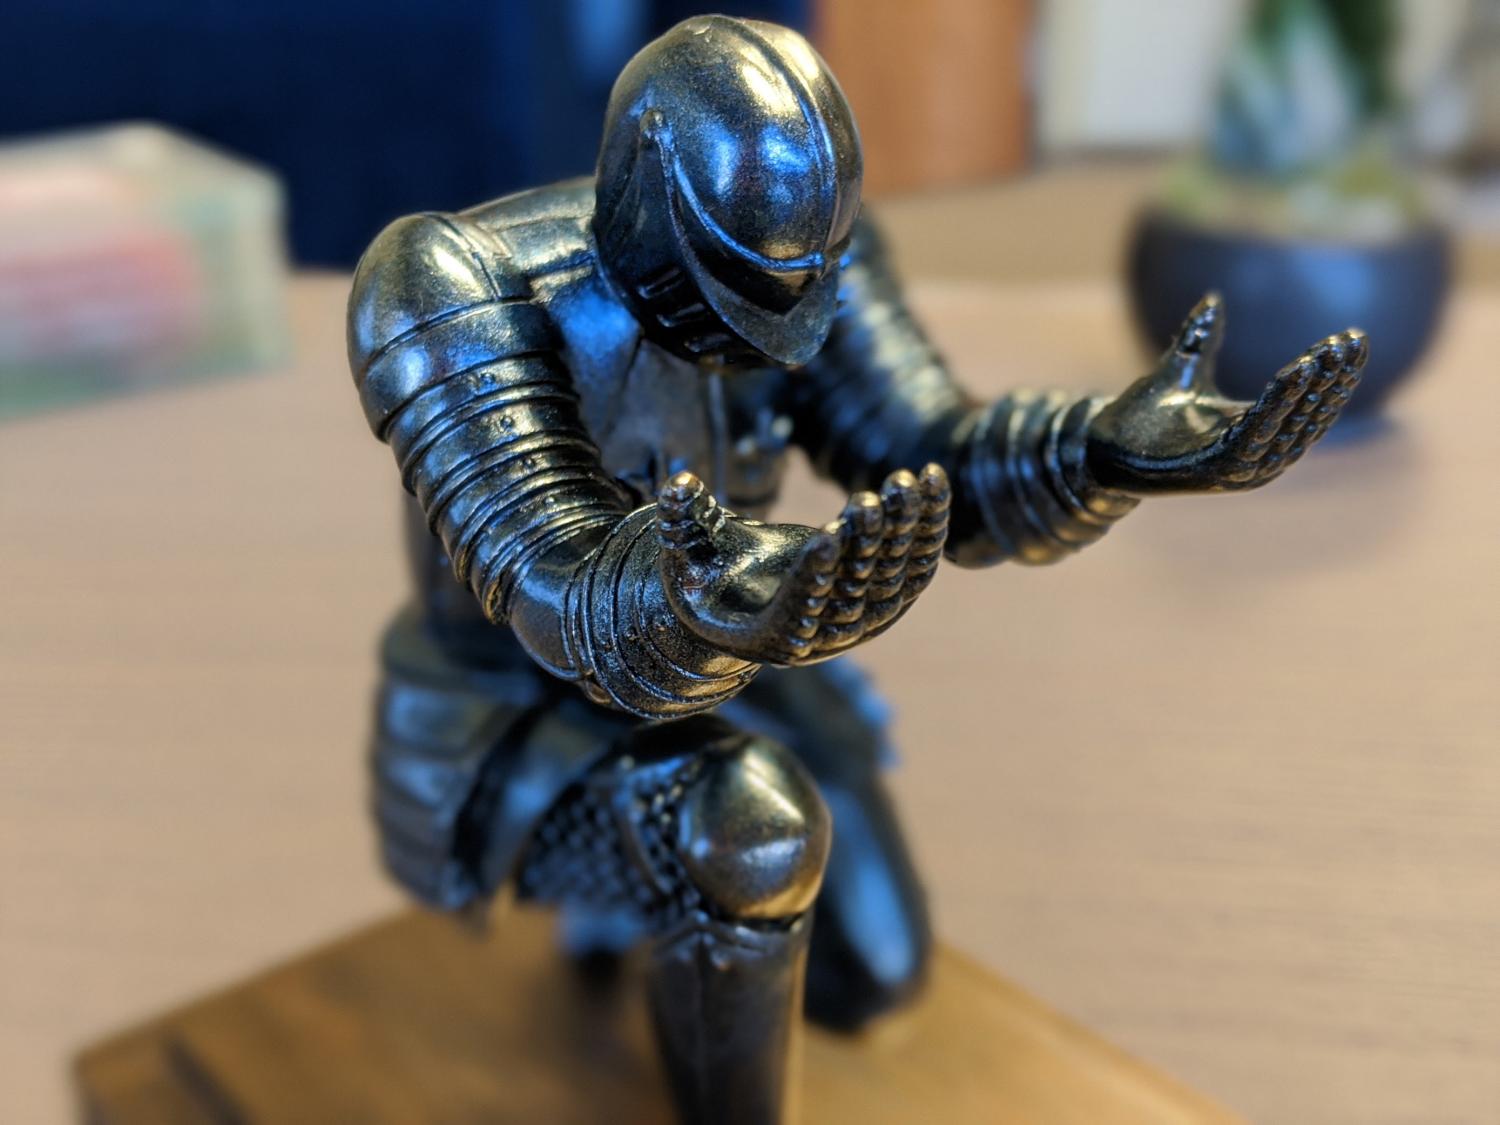 Bowing Knight Pen Holder - Medieval knight pen holder